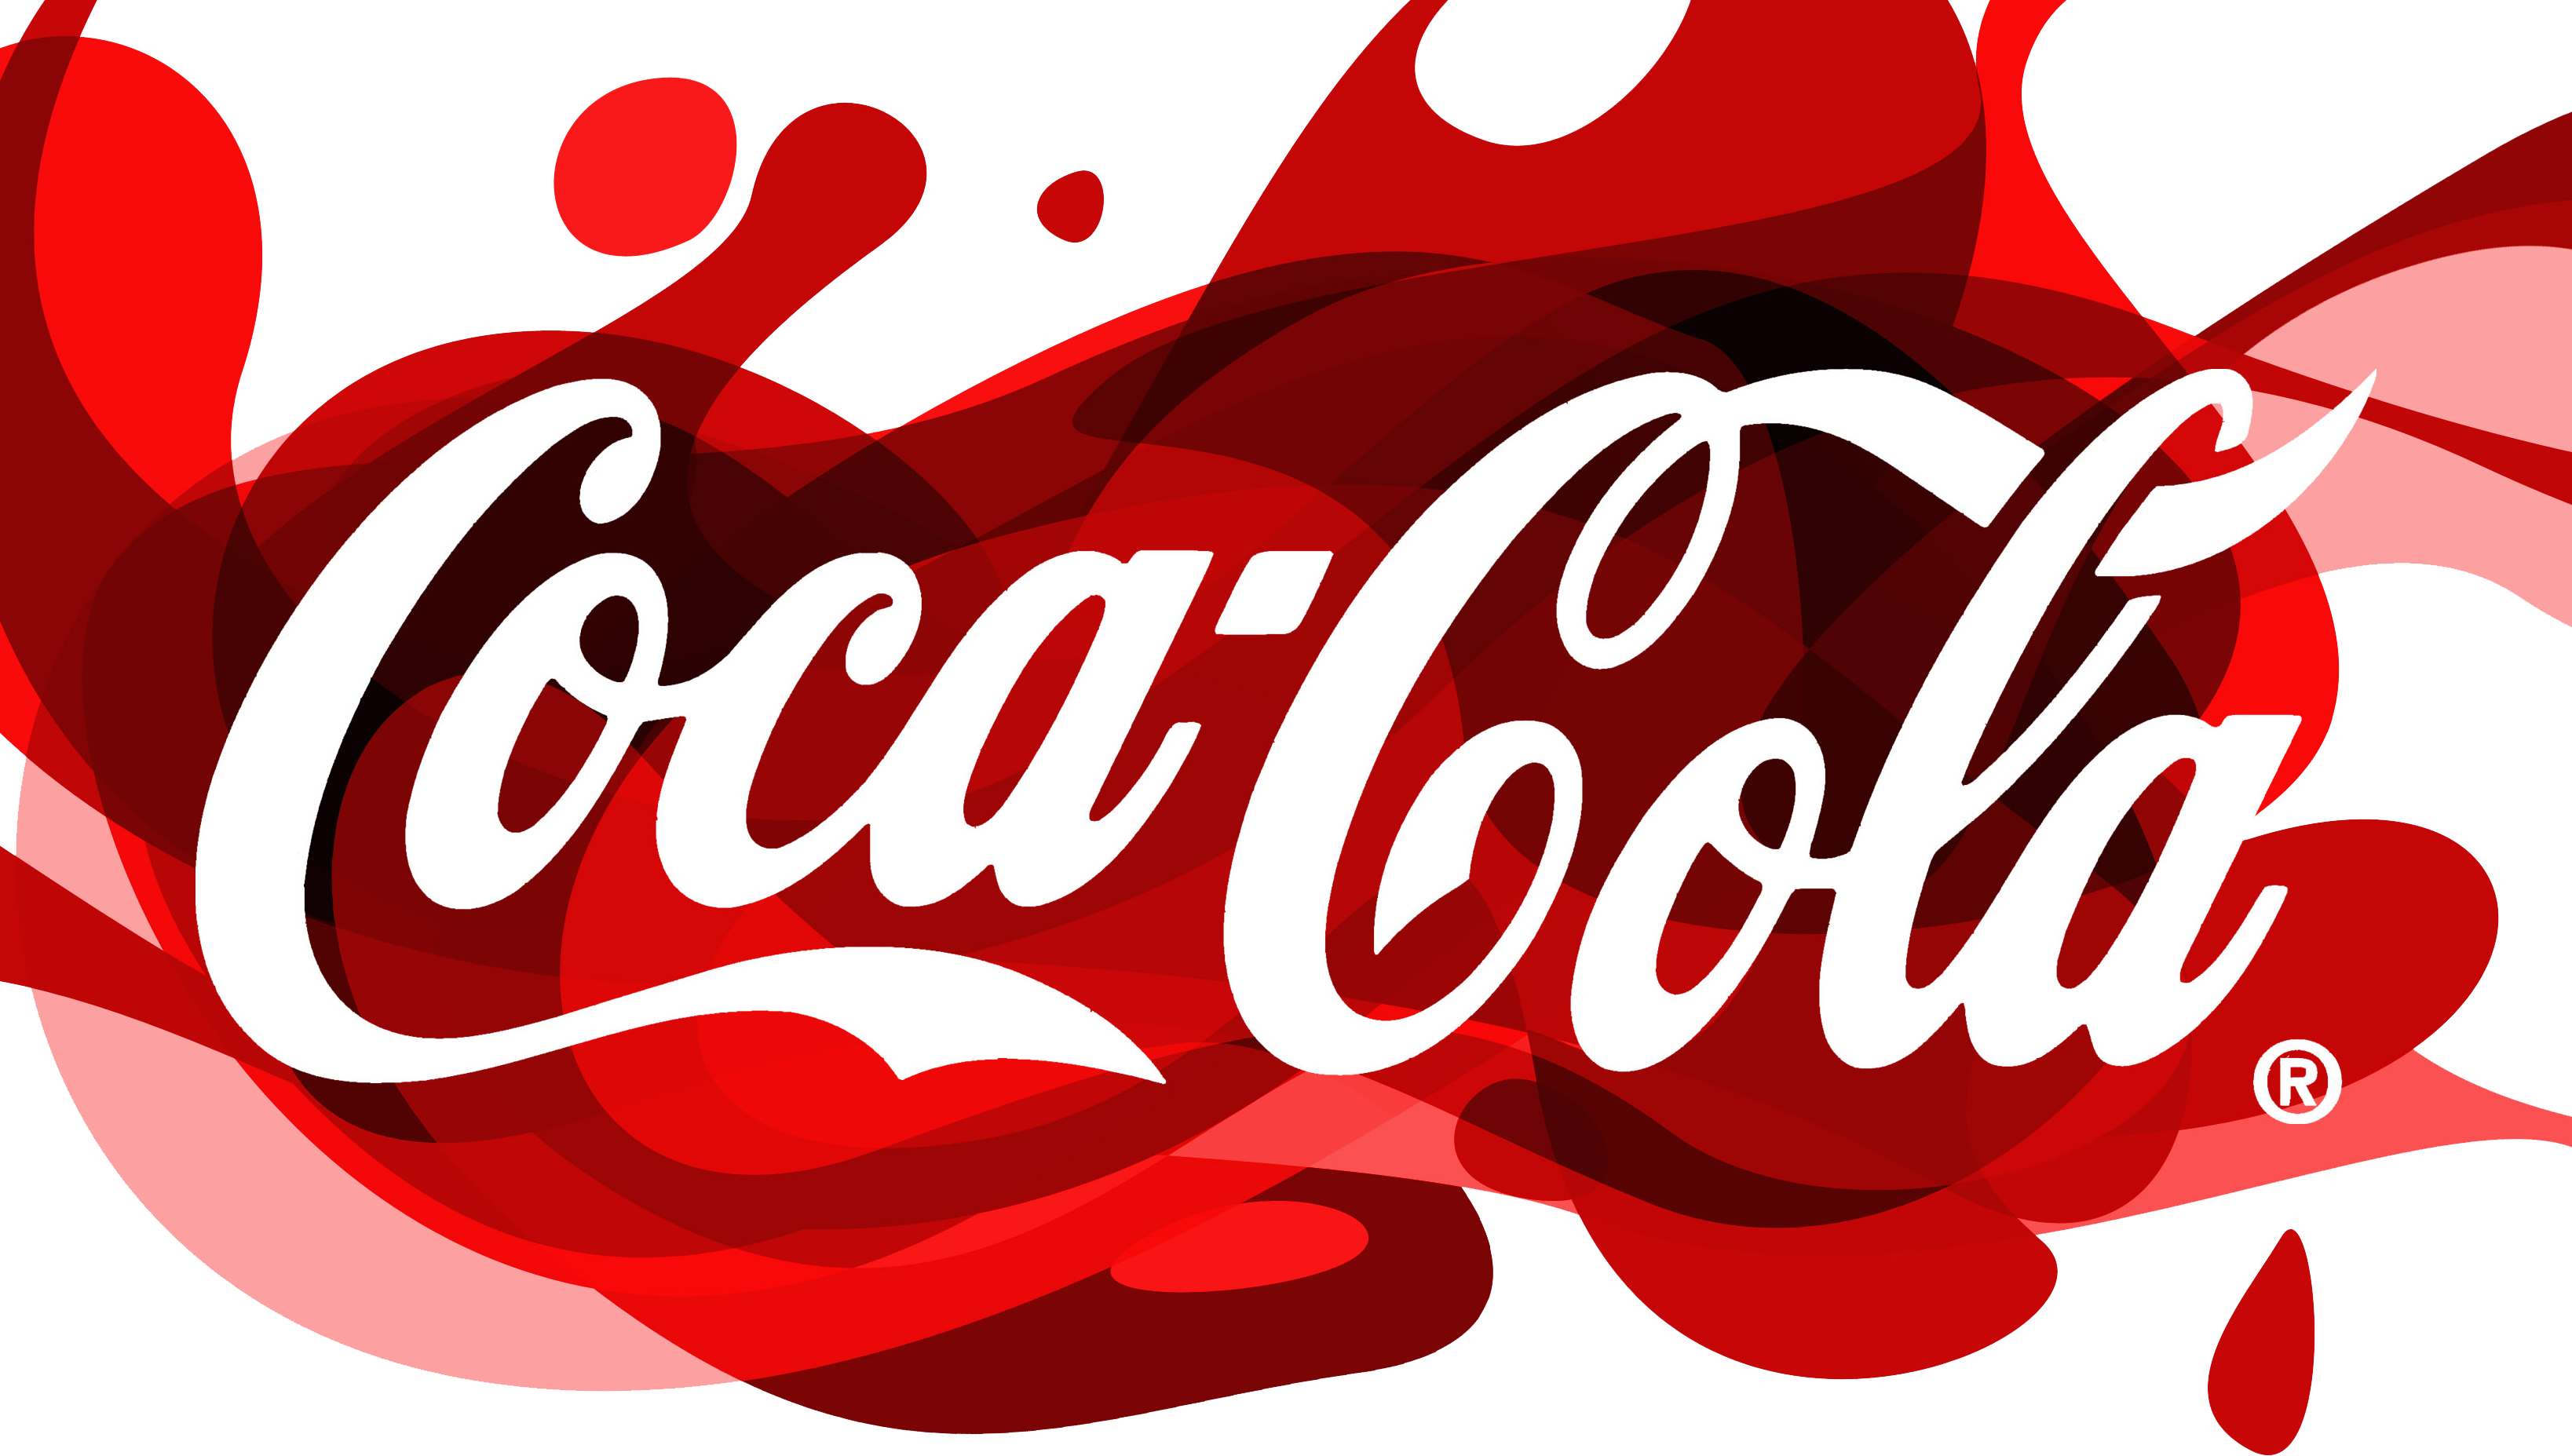 Coca 